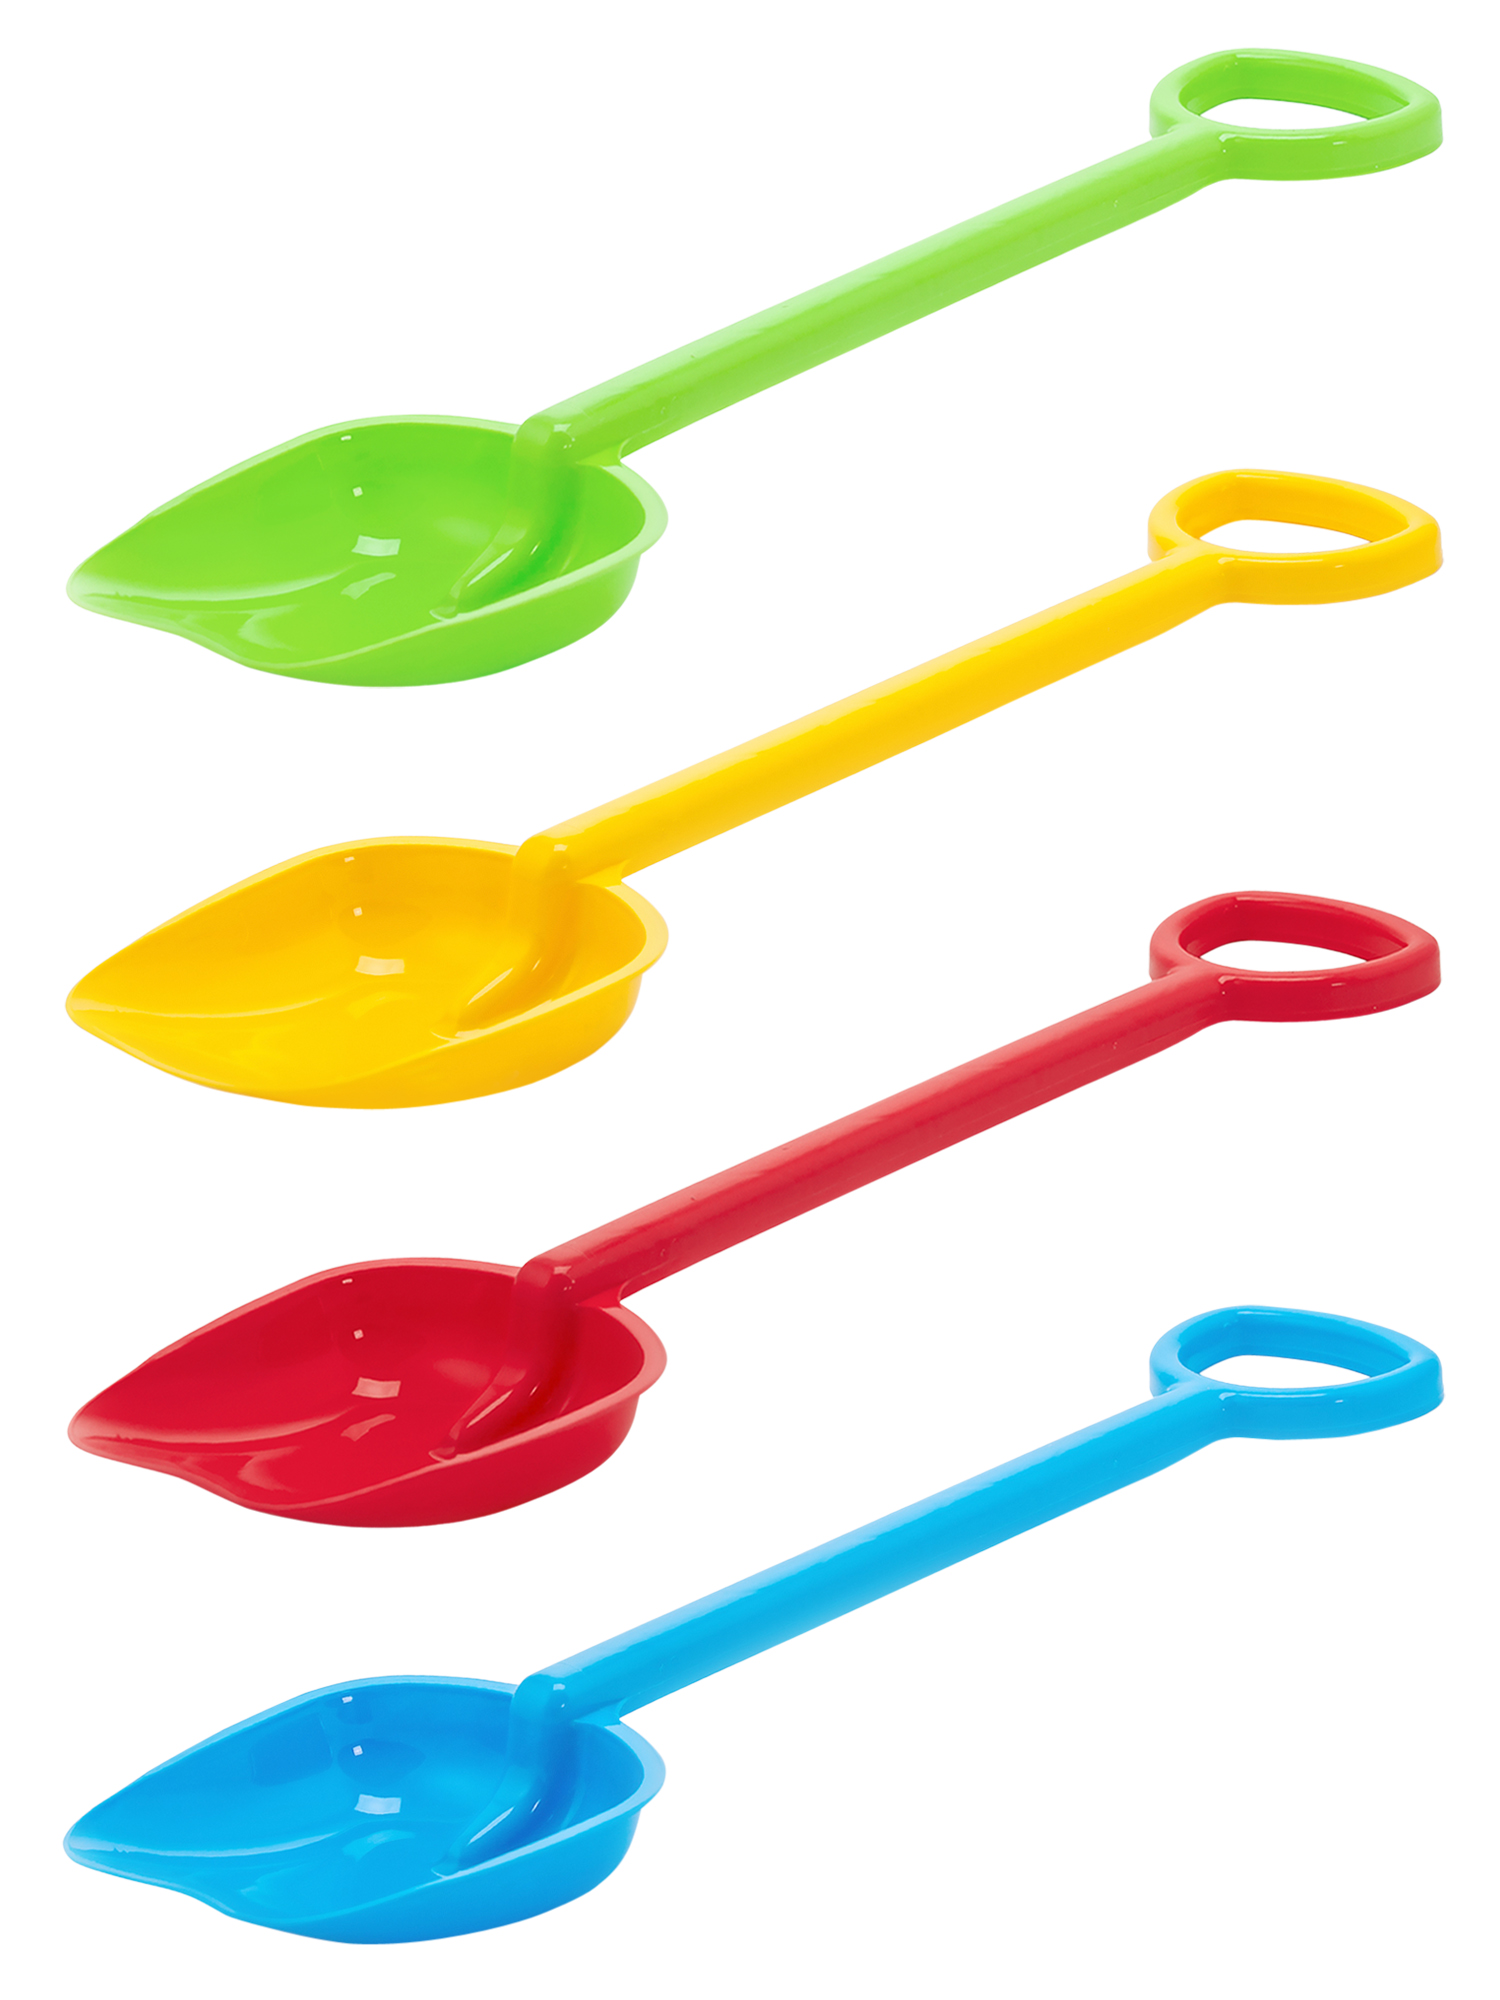 фото Набор лопат karolina toys лопатка 50 см - 4 шт. (салатовая, желтая, красная, голубая)